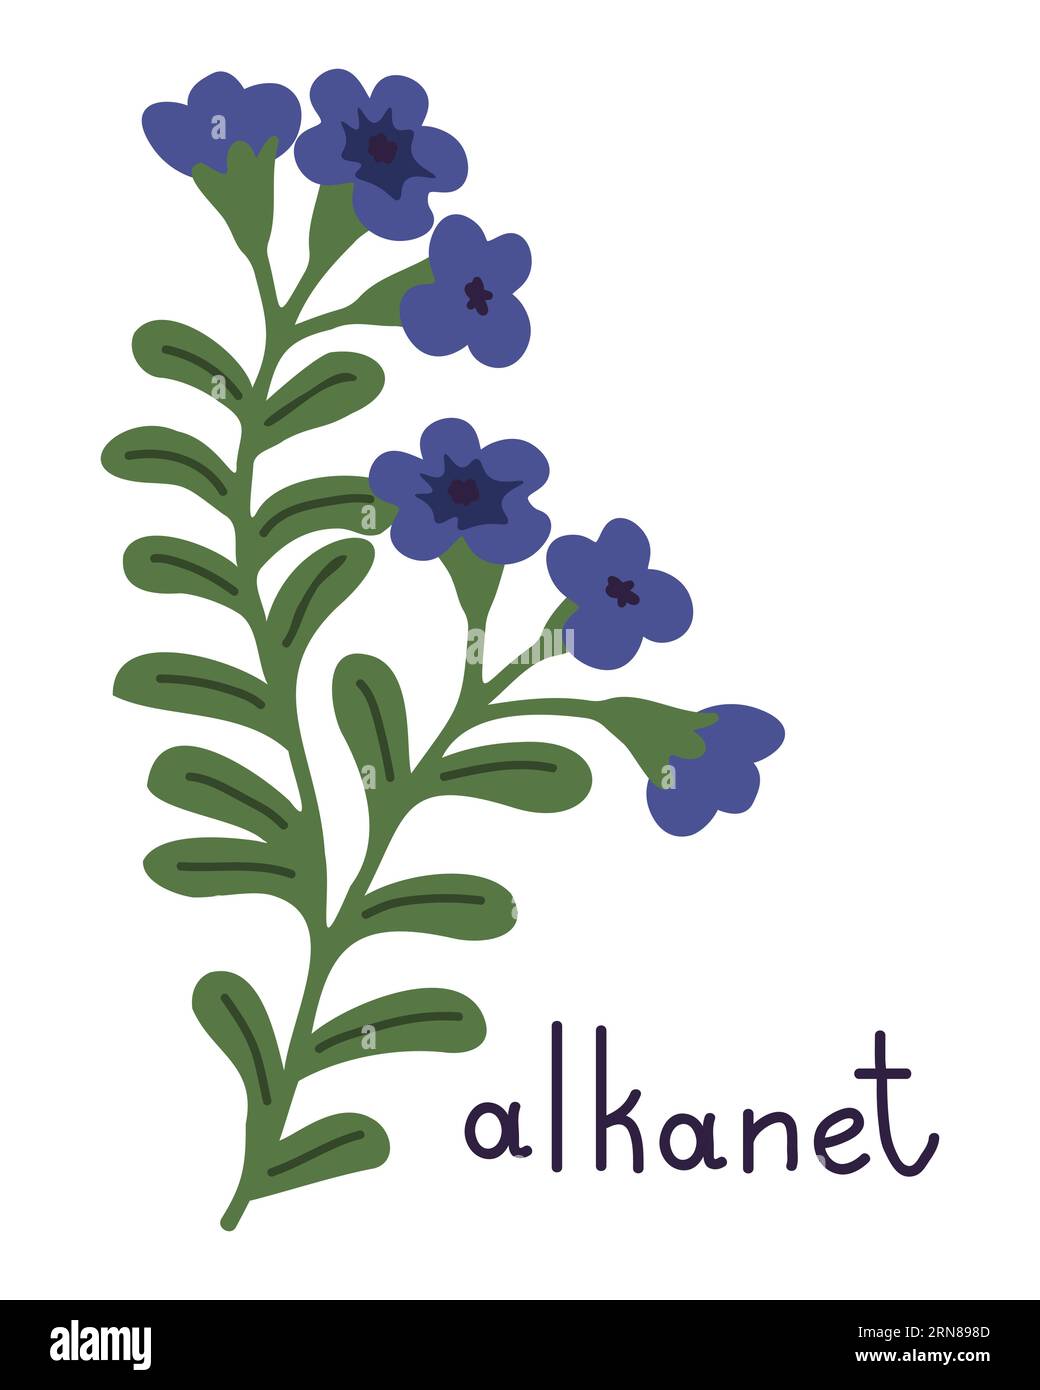 Illustrazione con fiore di alcanet vettoriale isolato Illustrazione Vettoriale